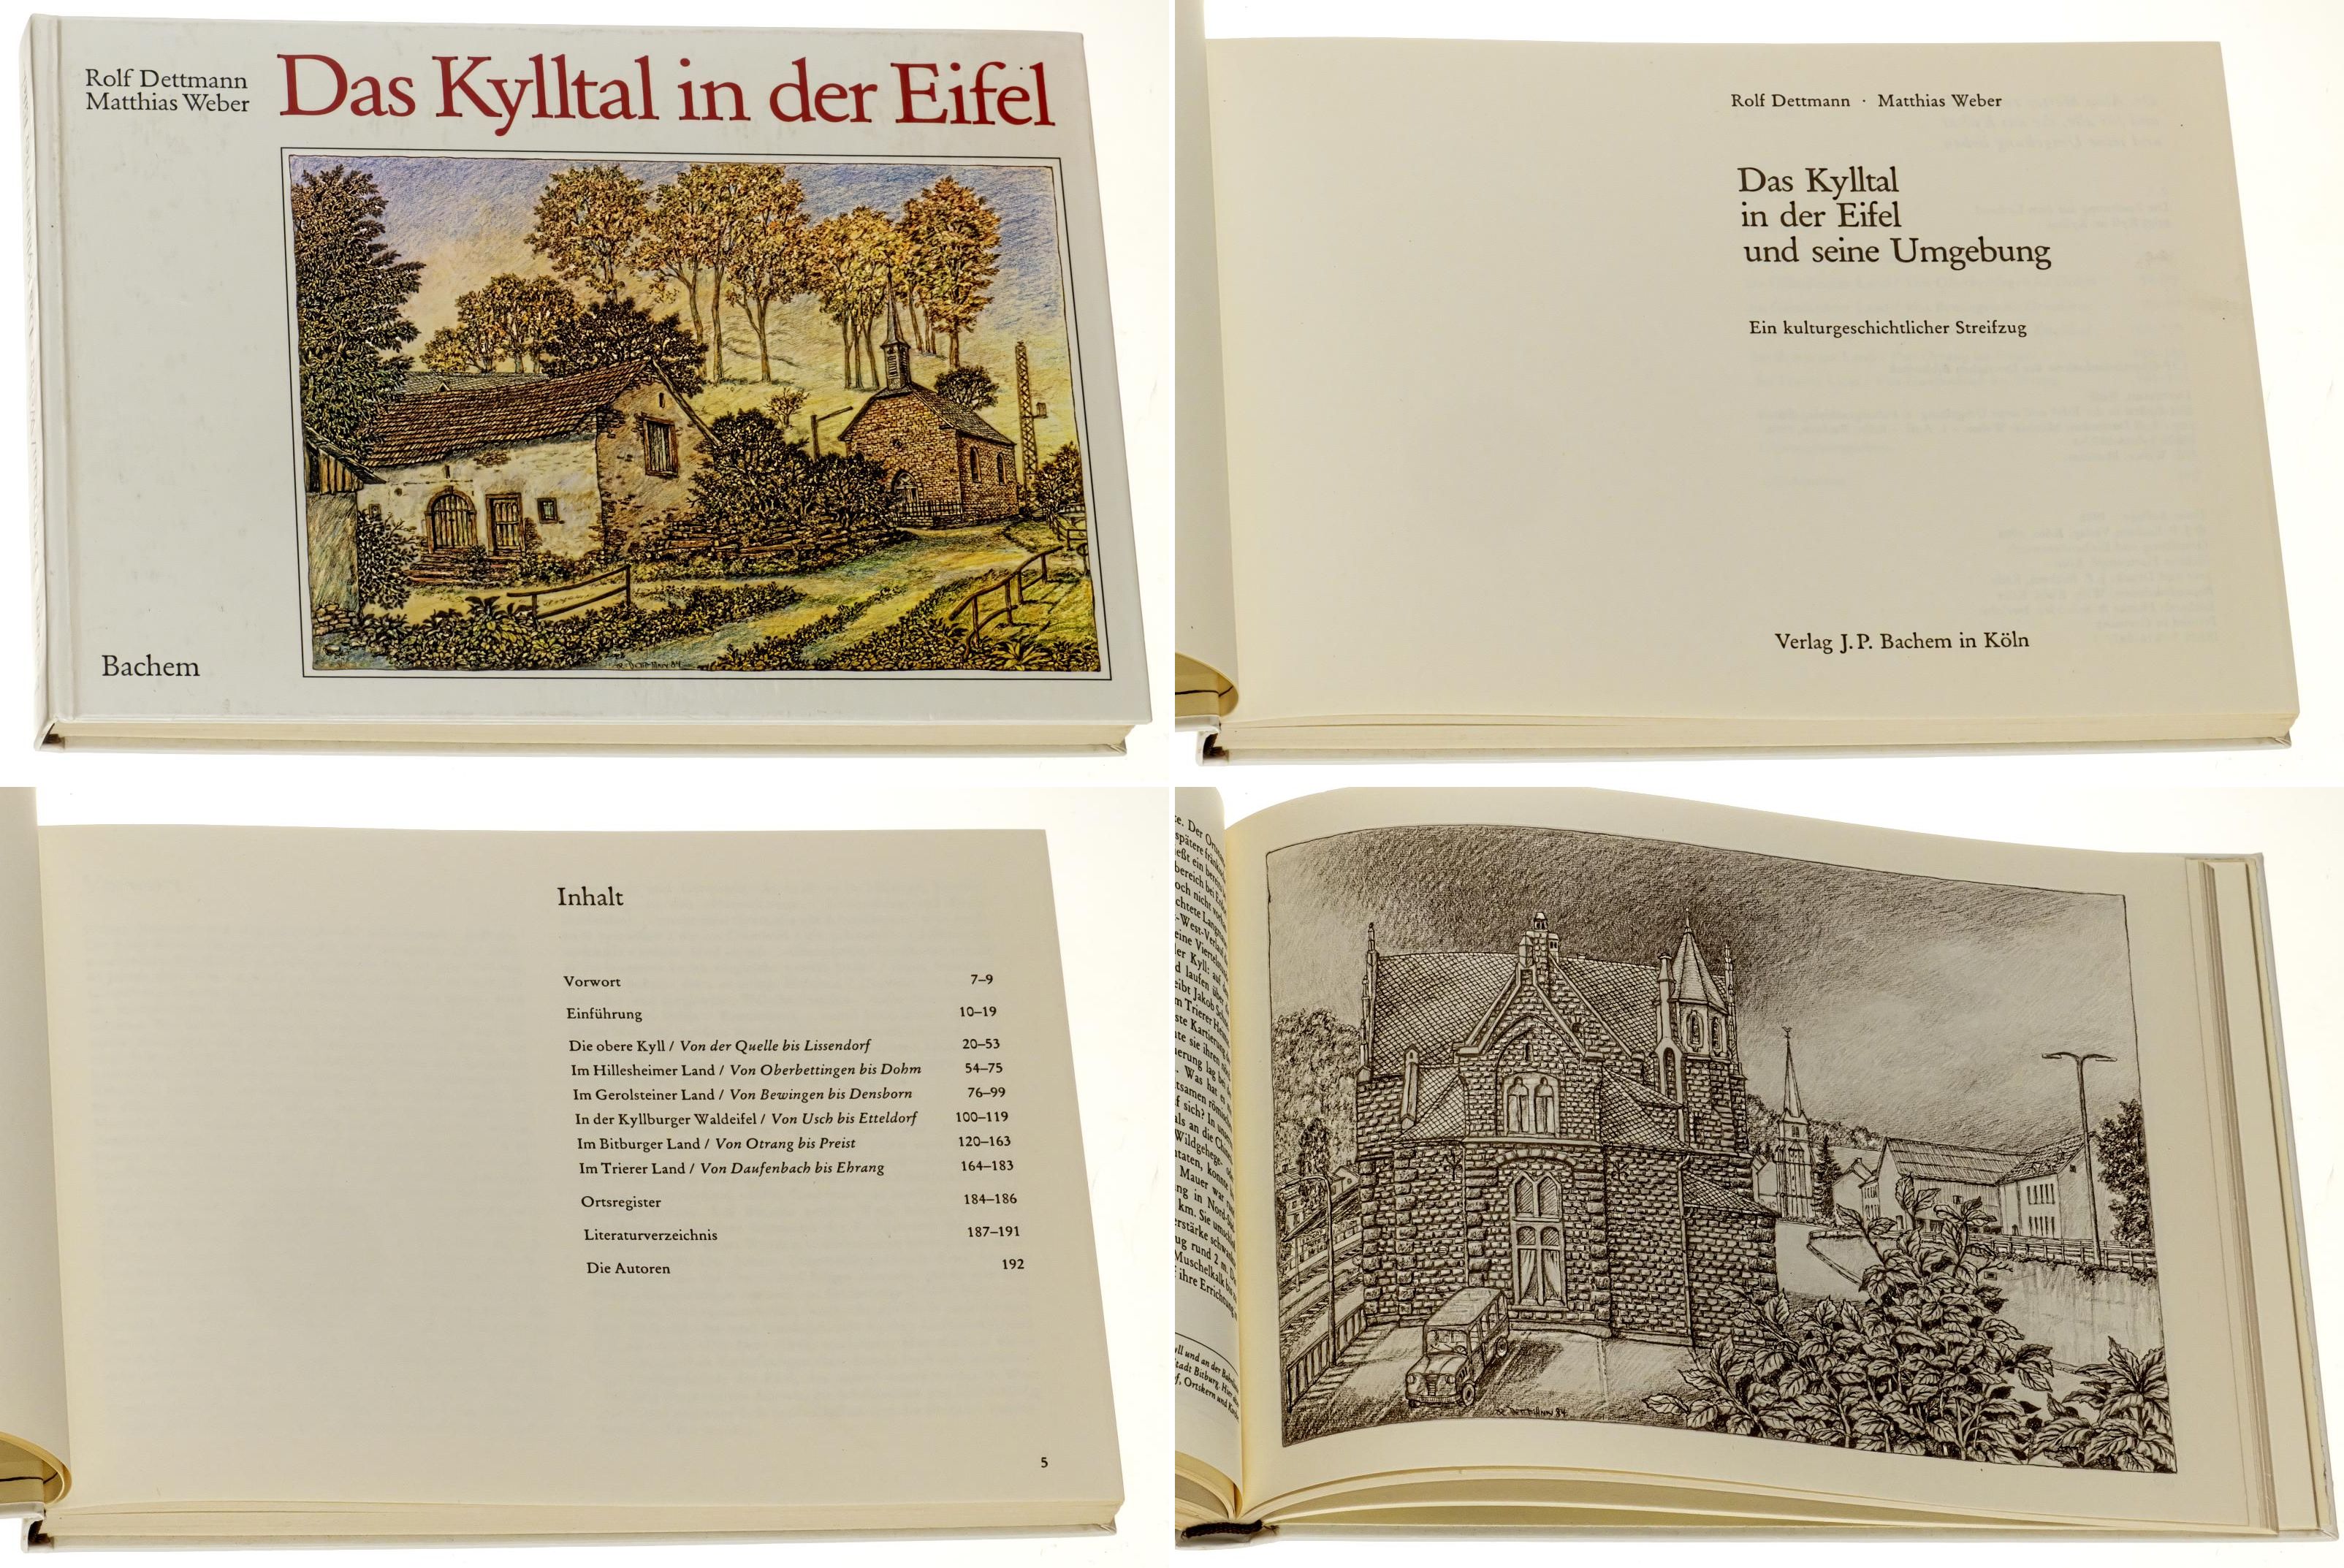 Dettmann, Rolf/ Matthias Weber:  Das Kylltal in der Eifel und seine Umgebung. Ein kulturgeschichtlicher Streifzug. 